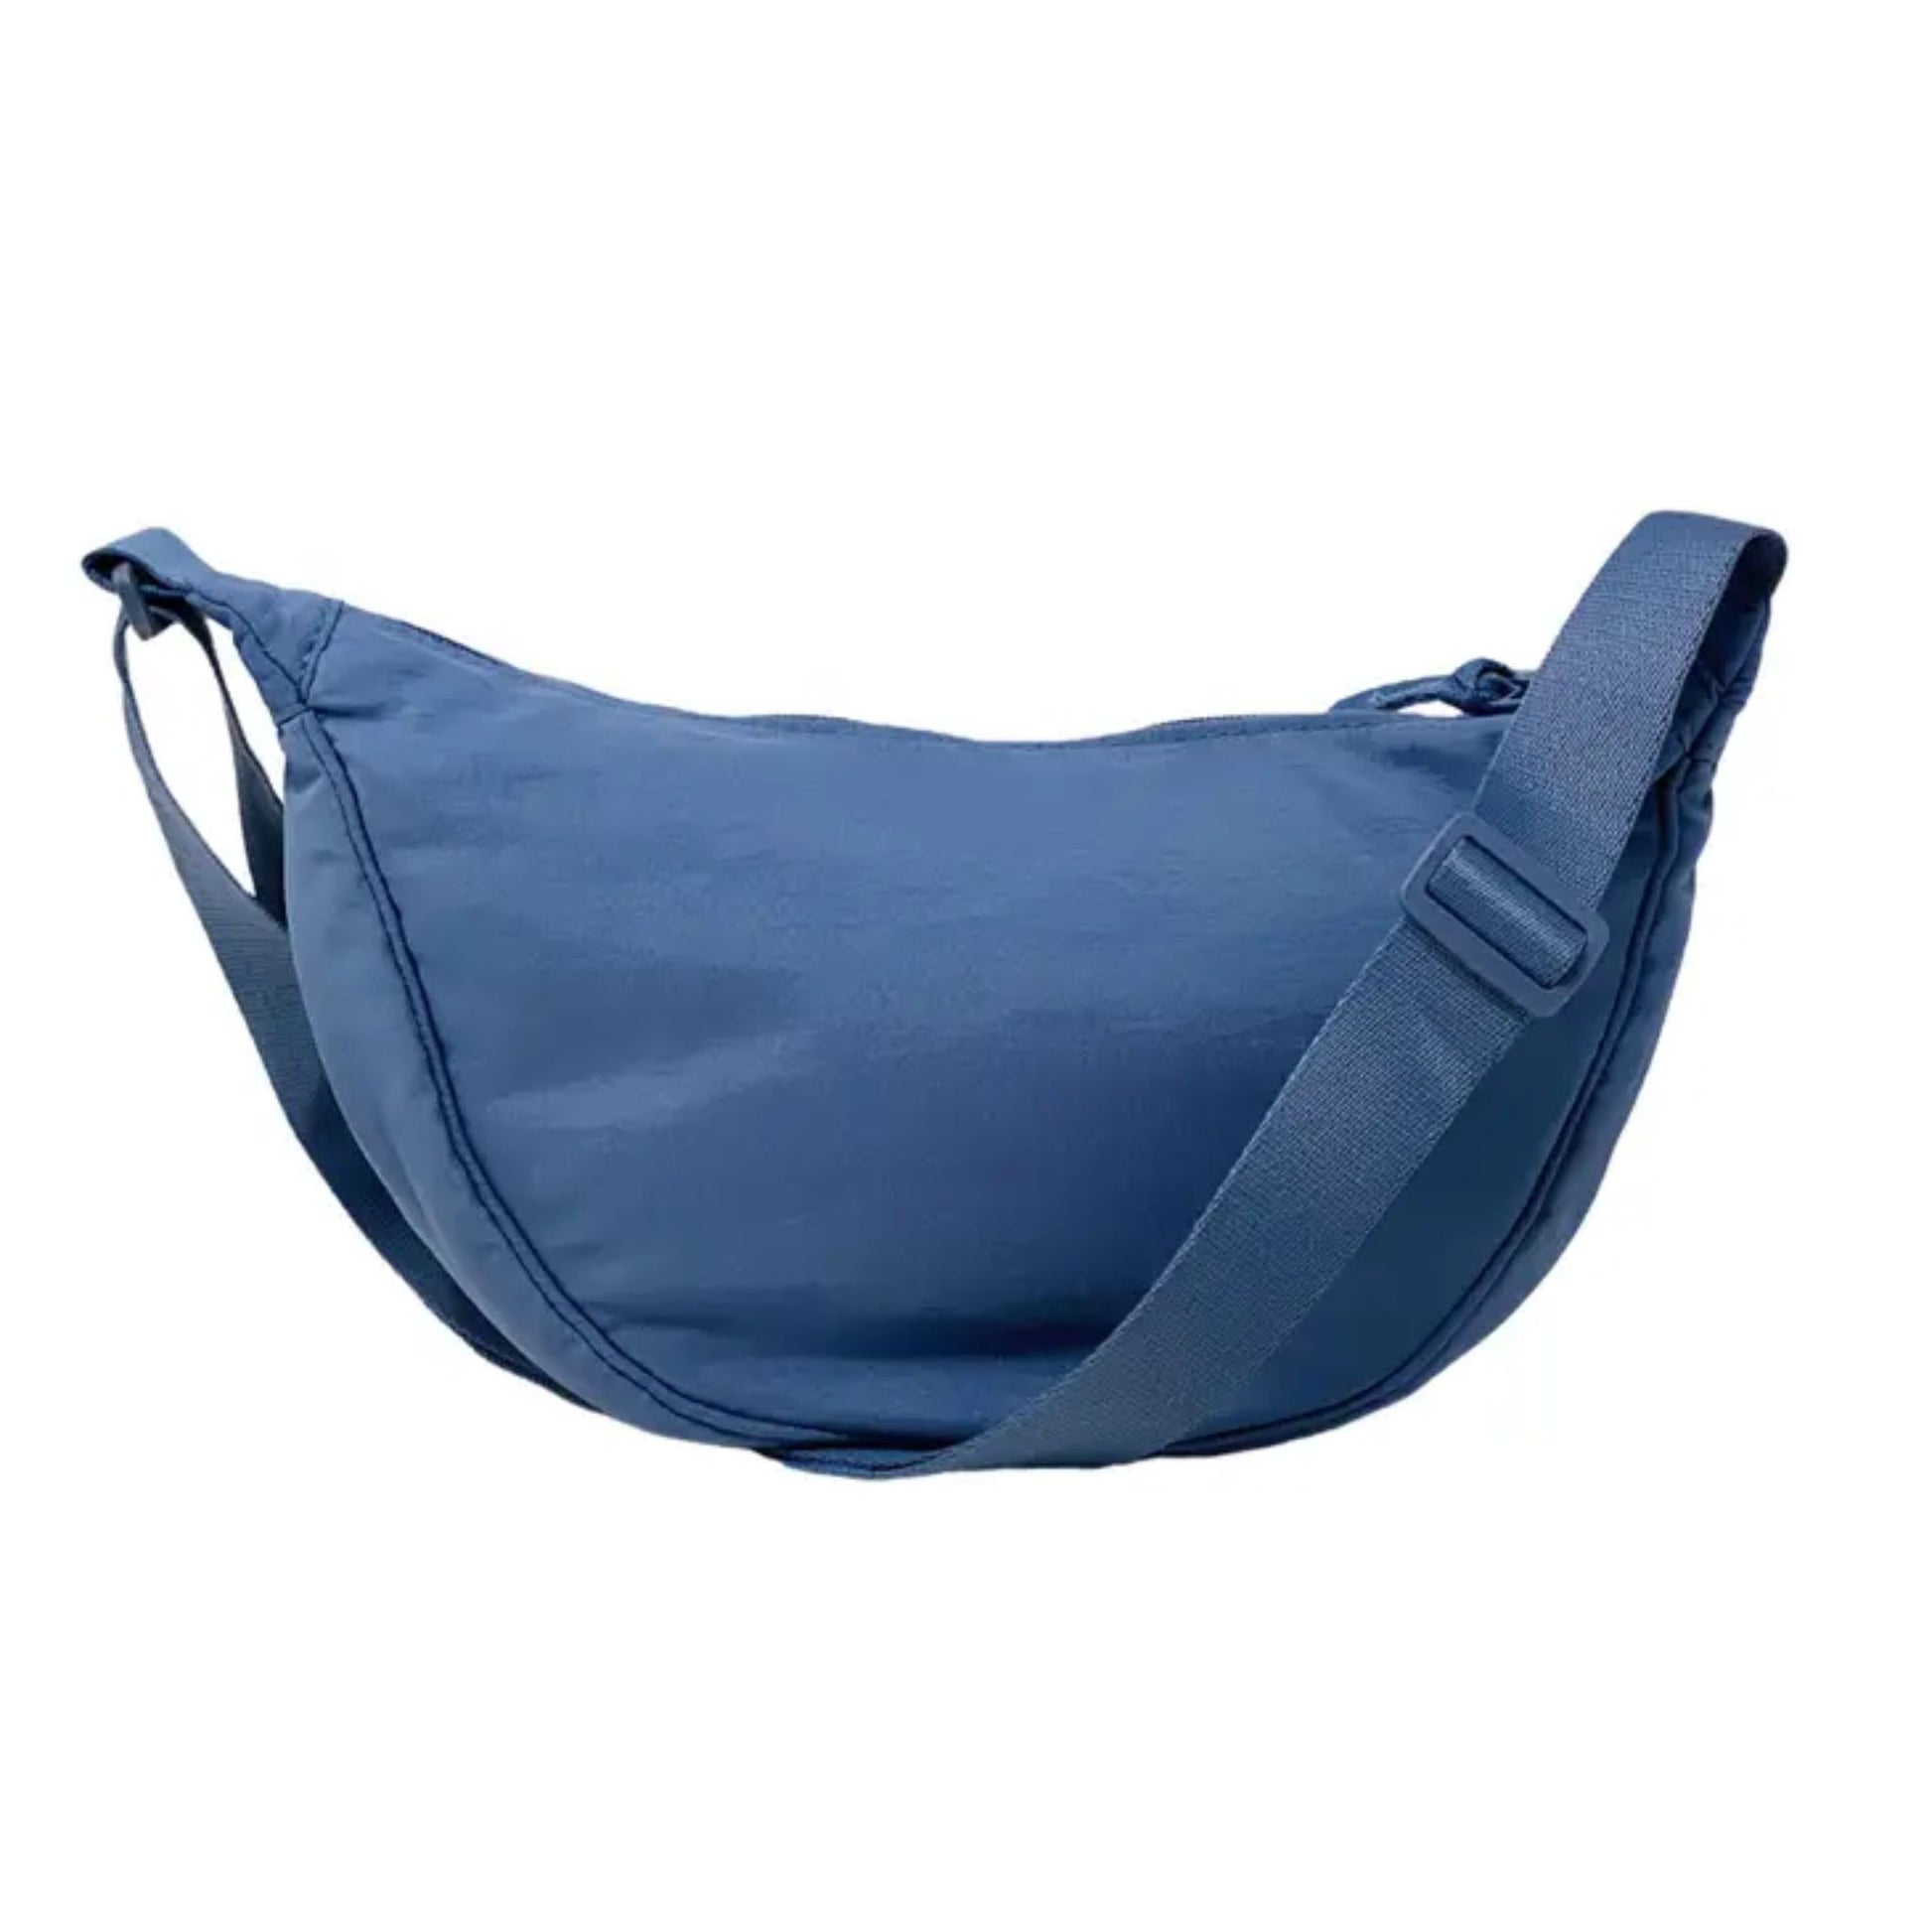 Cross body sling bag blue